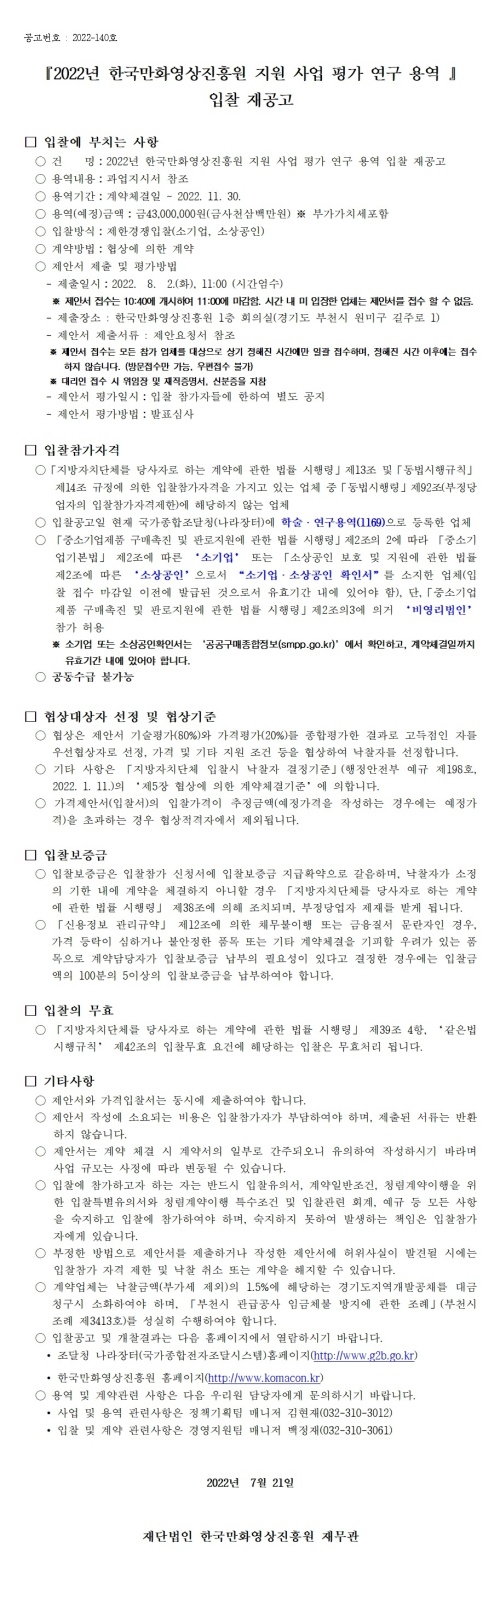 『2022년 한국만화영상진흥원 지원 사업 평가 연구 용역』 입찰 재공고